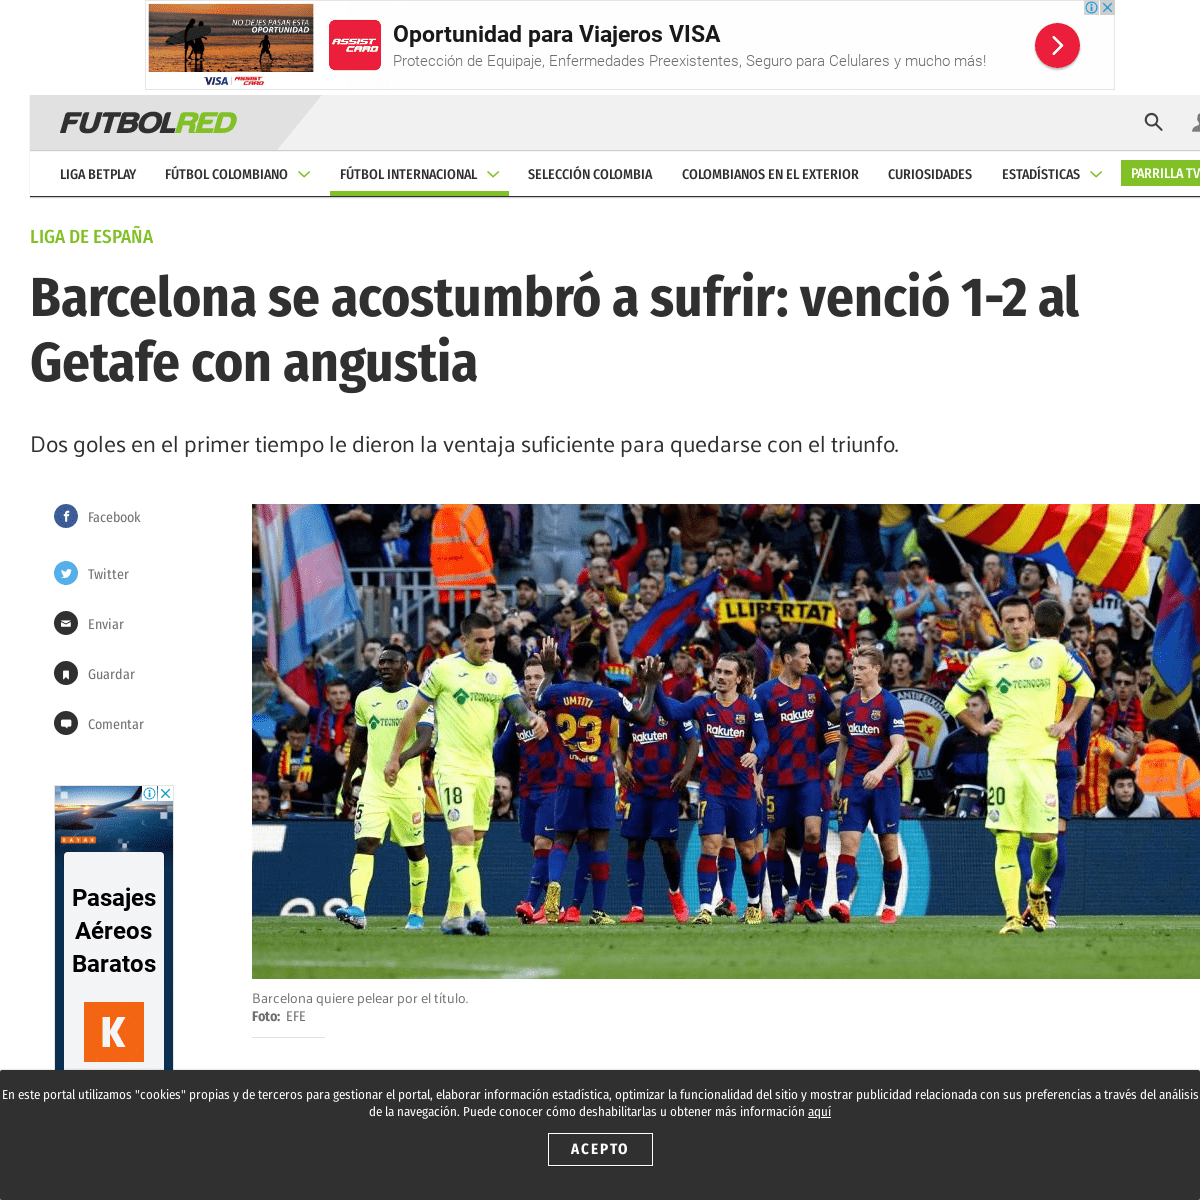 A complete backup of www.futbolred.com/liga-de-espana/barcelona-vs-getafe-goles-y-mejores-momentos-del-partido-113145